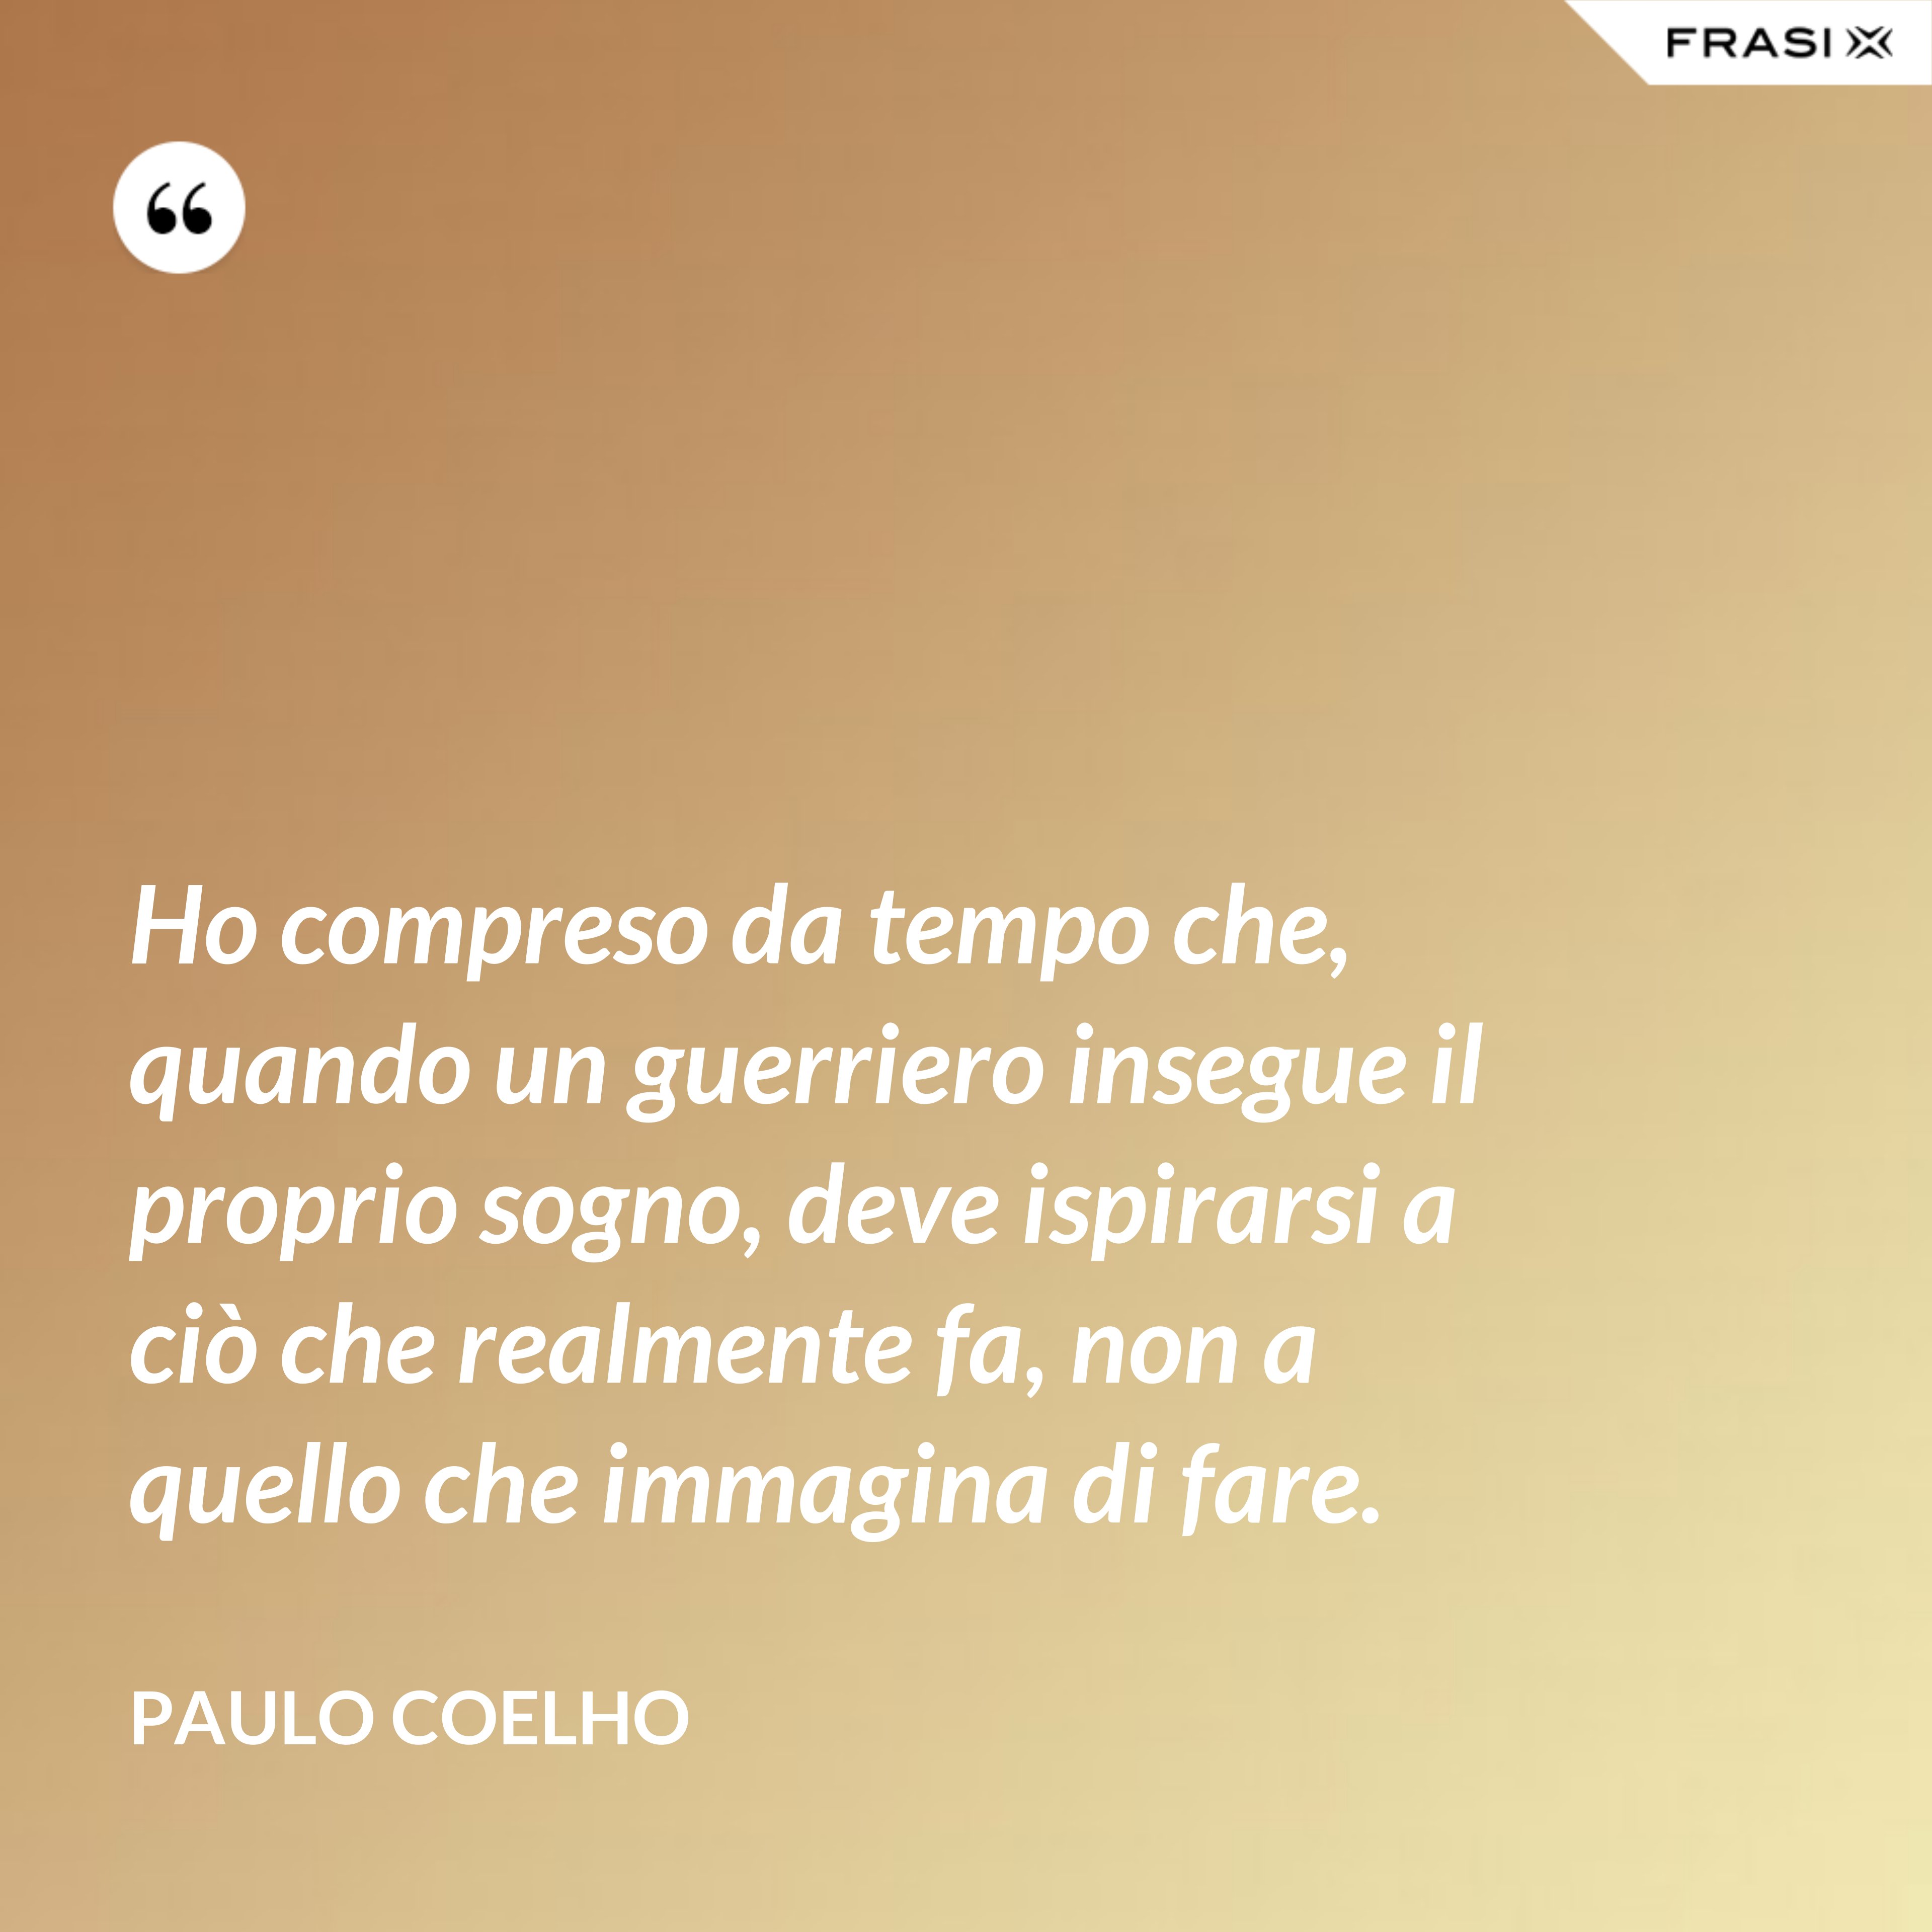 Ho compreso da tempo che, quando un guerriero insegue il proprio sogno, deve ispirarsi a ciò che realmente fa, non a quello che immagina di fare. - Paulo Coelho